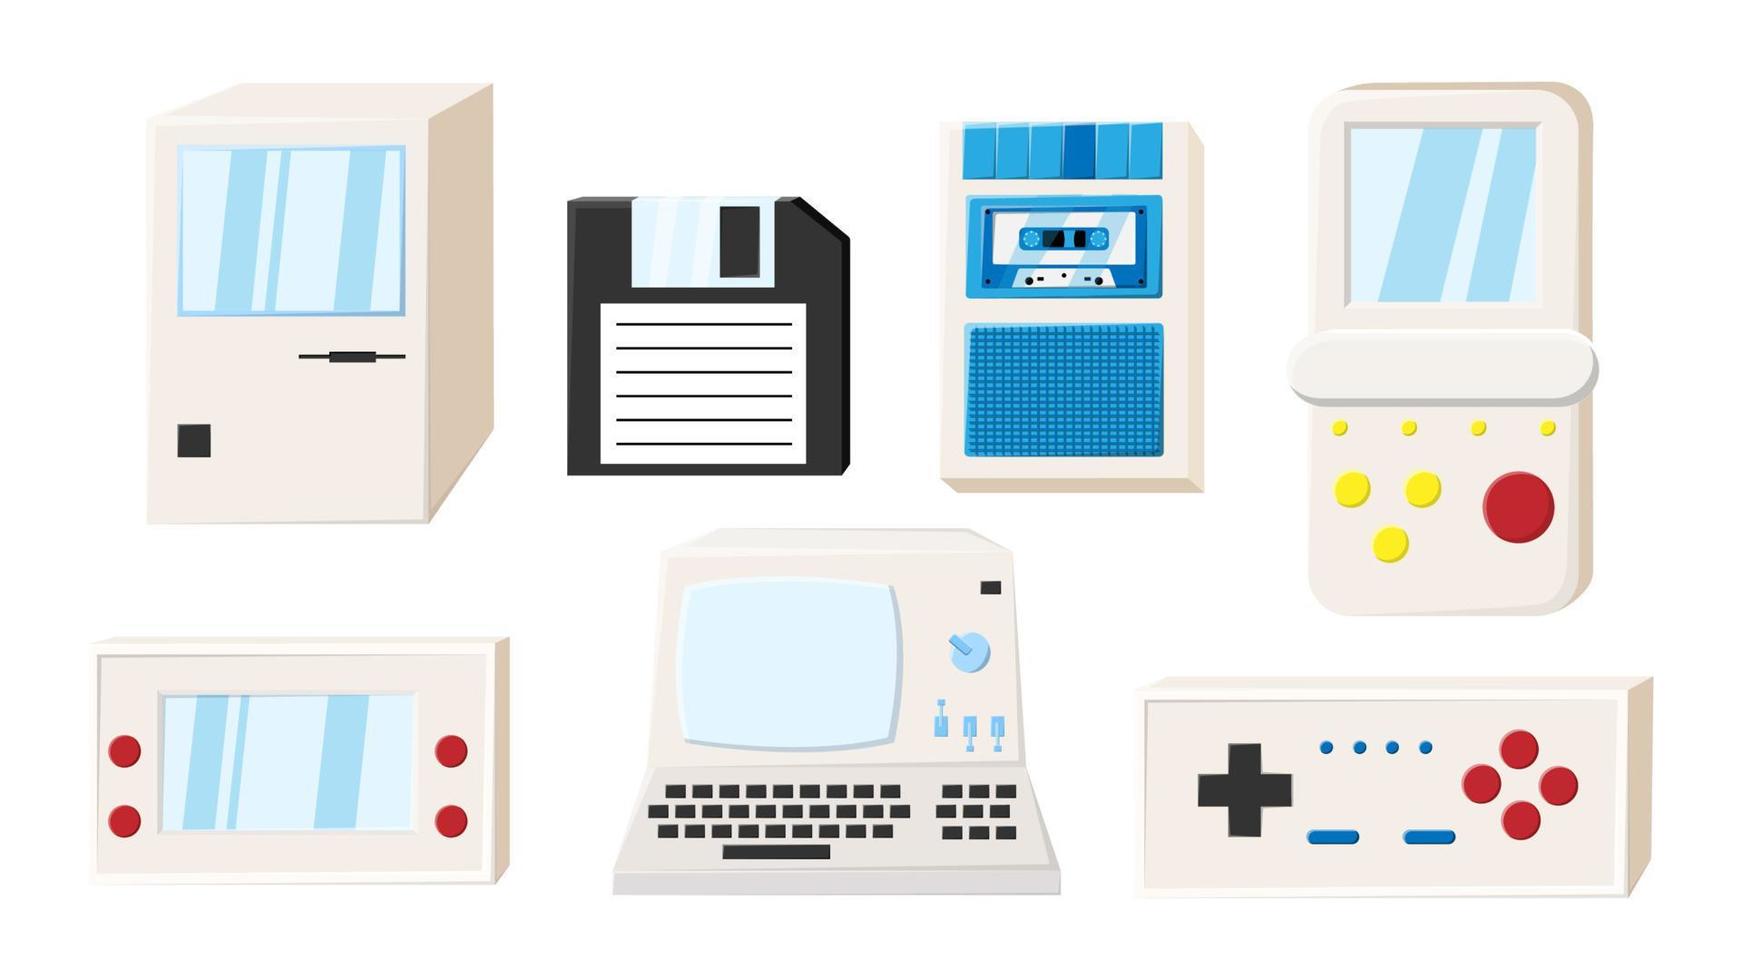 uppsättning av gammal retro årgång isometri teknologi elektronik dator, pc, diskett diskett disk, spel bärbar video spel konsoler från 70-talet, 80-tal, 90-tal. vektor illustration